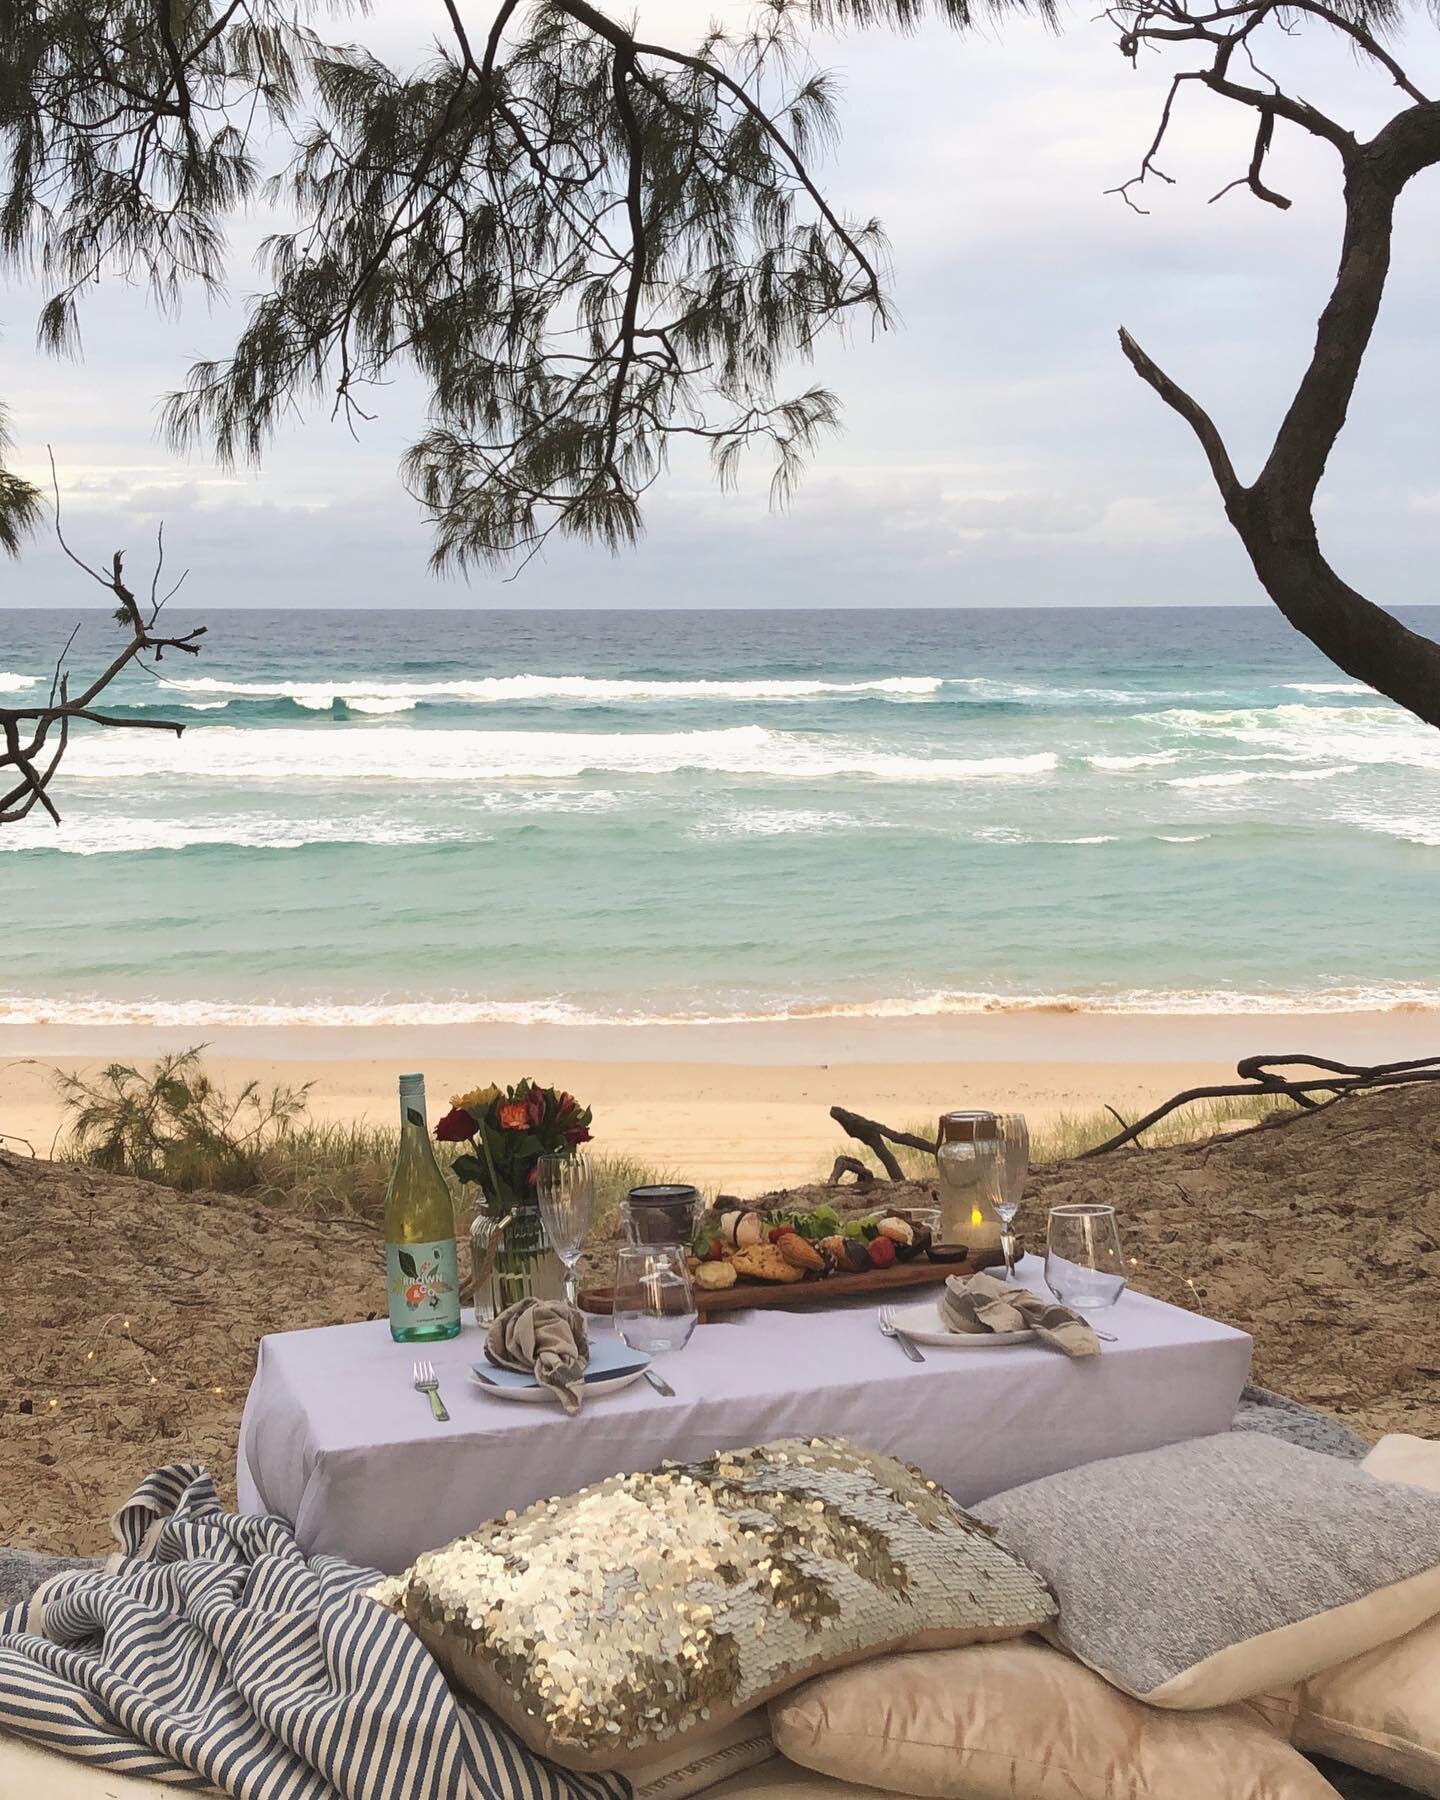 Beach dessert for lovers 🥂